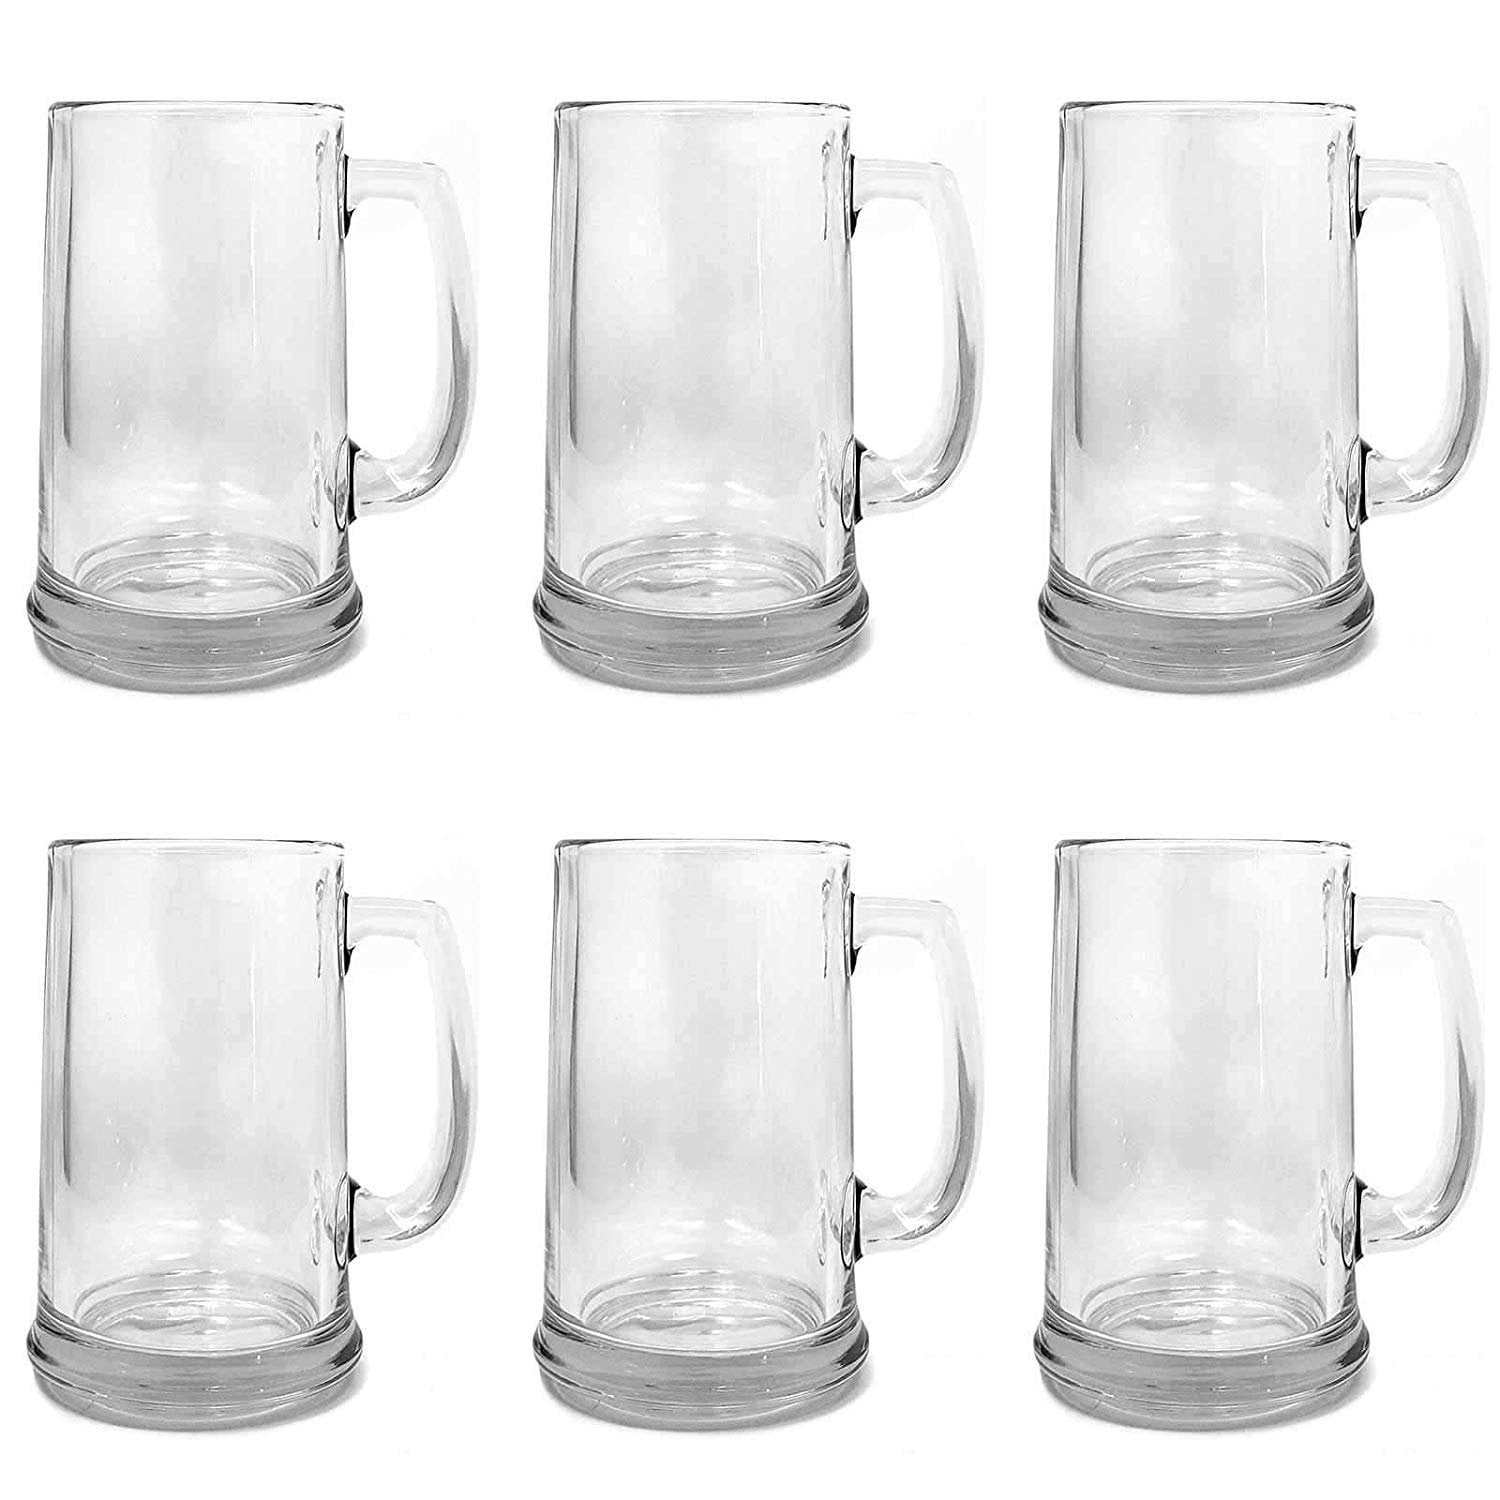 Beer Mug Glass Clear Kitchen Drink Ware Dishwasher Safe Set Of 6 15 Ounces New! 